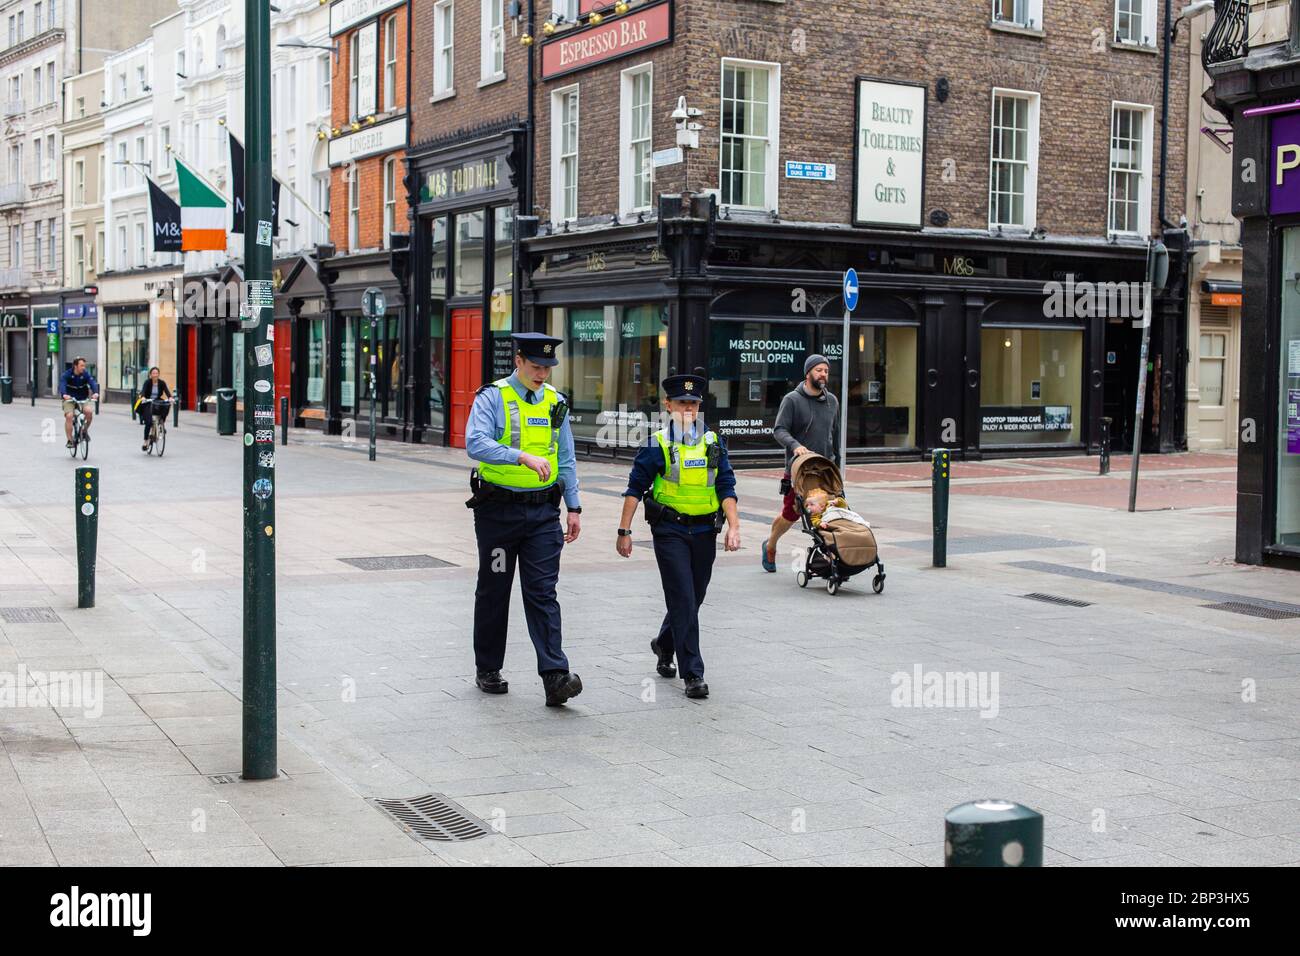 Dublin, Irland. Mai 2020. Begrenzte Anzahl und Verkehr im Stadtzentrum von Dublin und Geschäfte und Geschäfte wegen Covid-19 Pandemiebeschränkungen geschlossen. Stockfoto